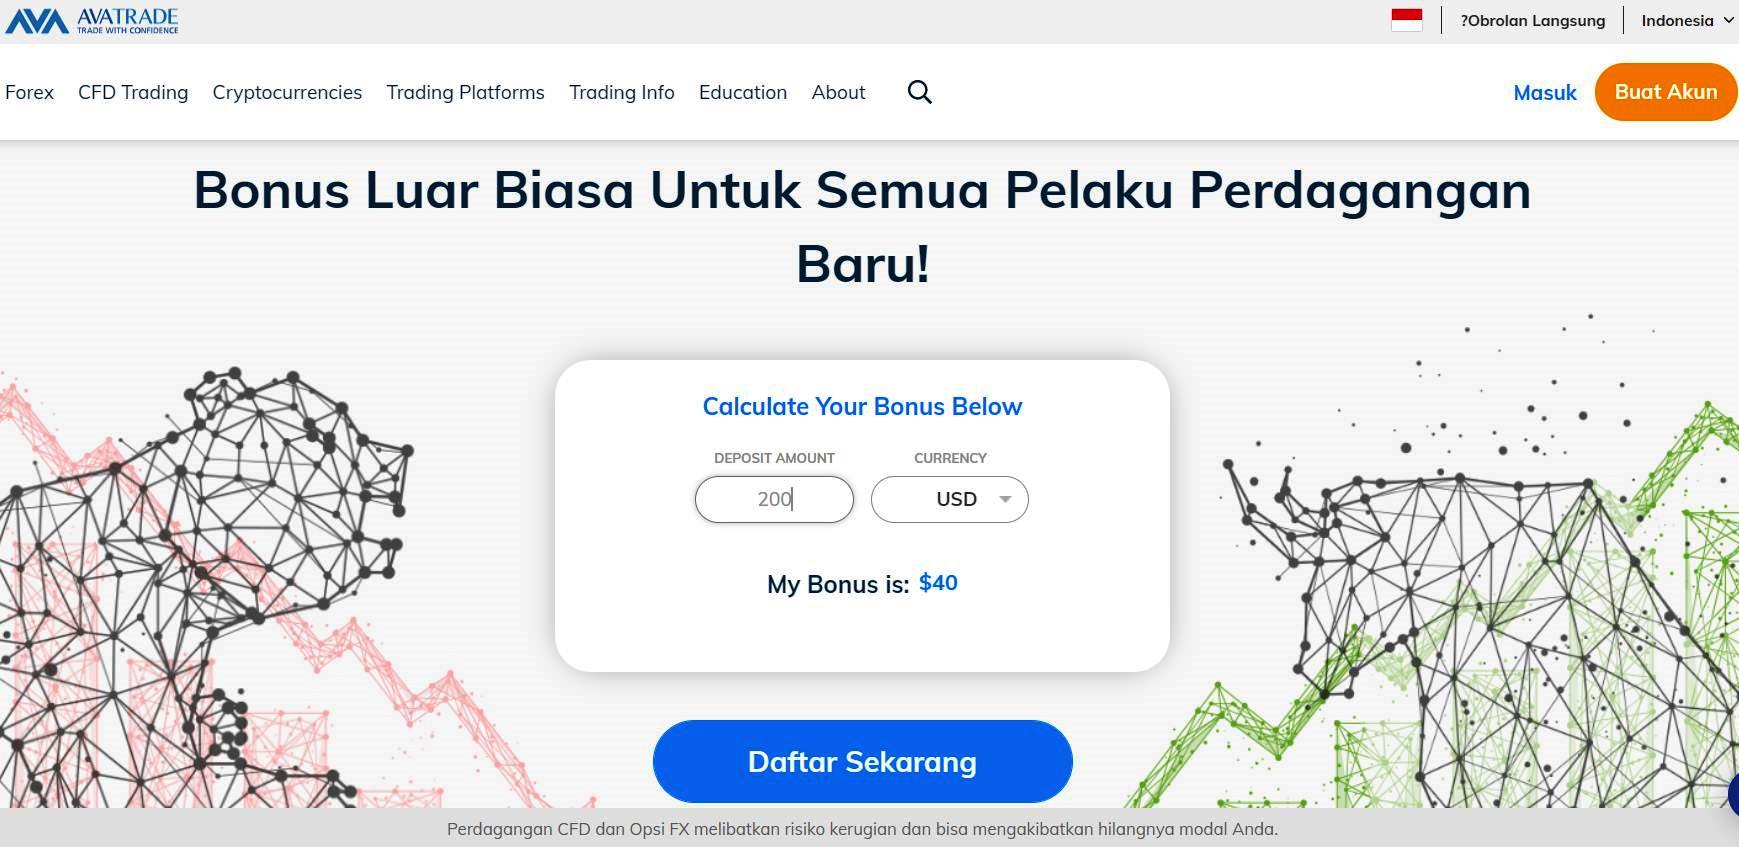 welcome bonus forex Indonesia dari avatrade